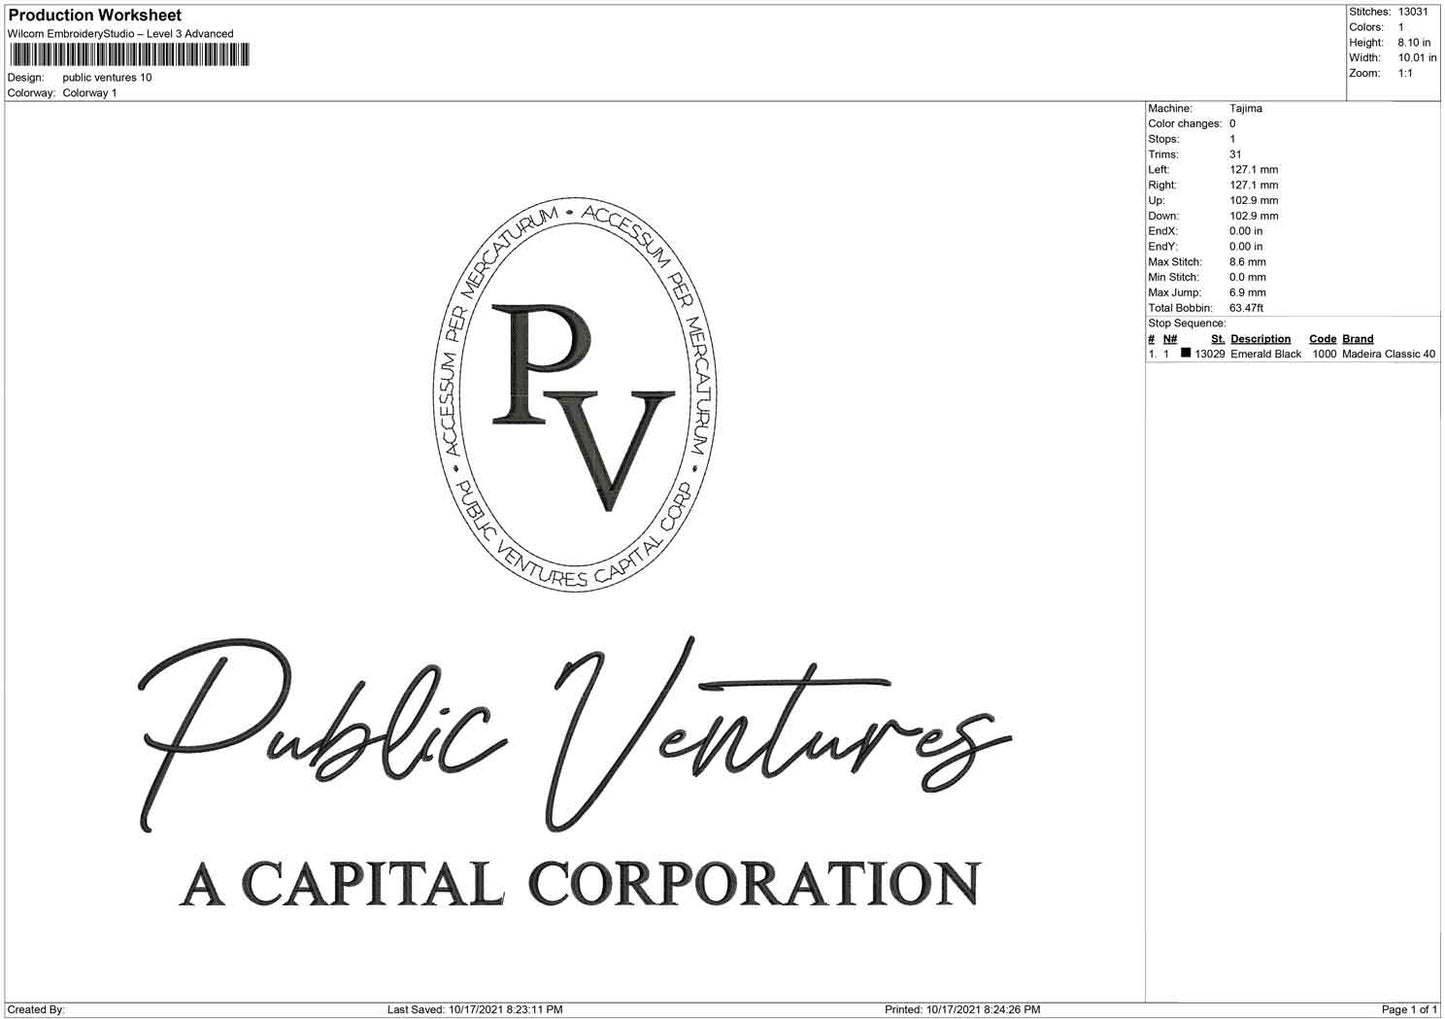 PV public ventures